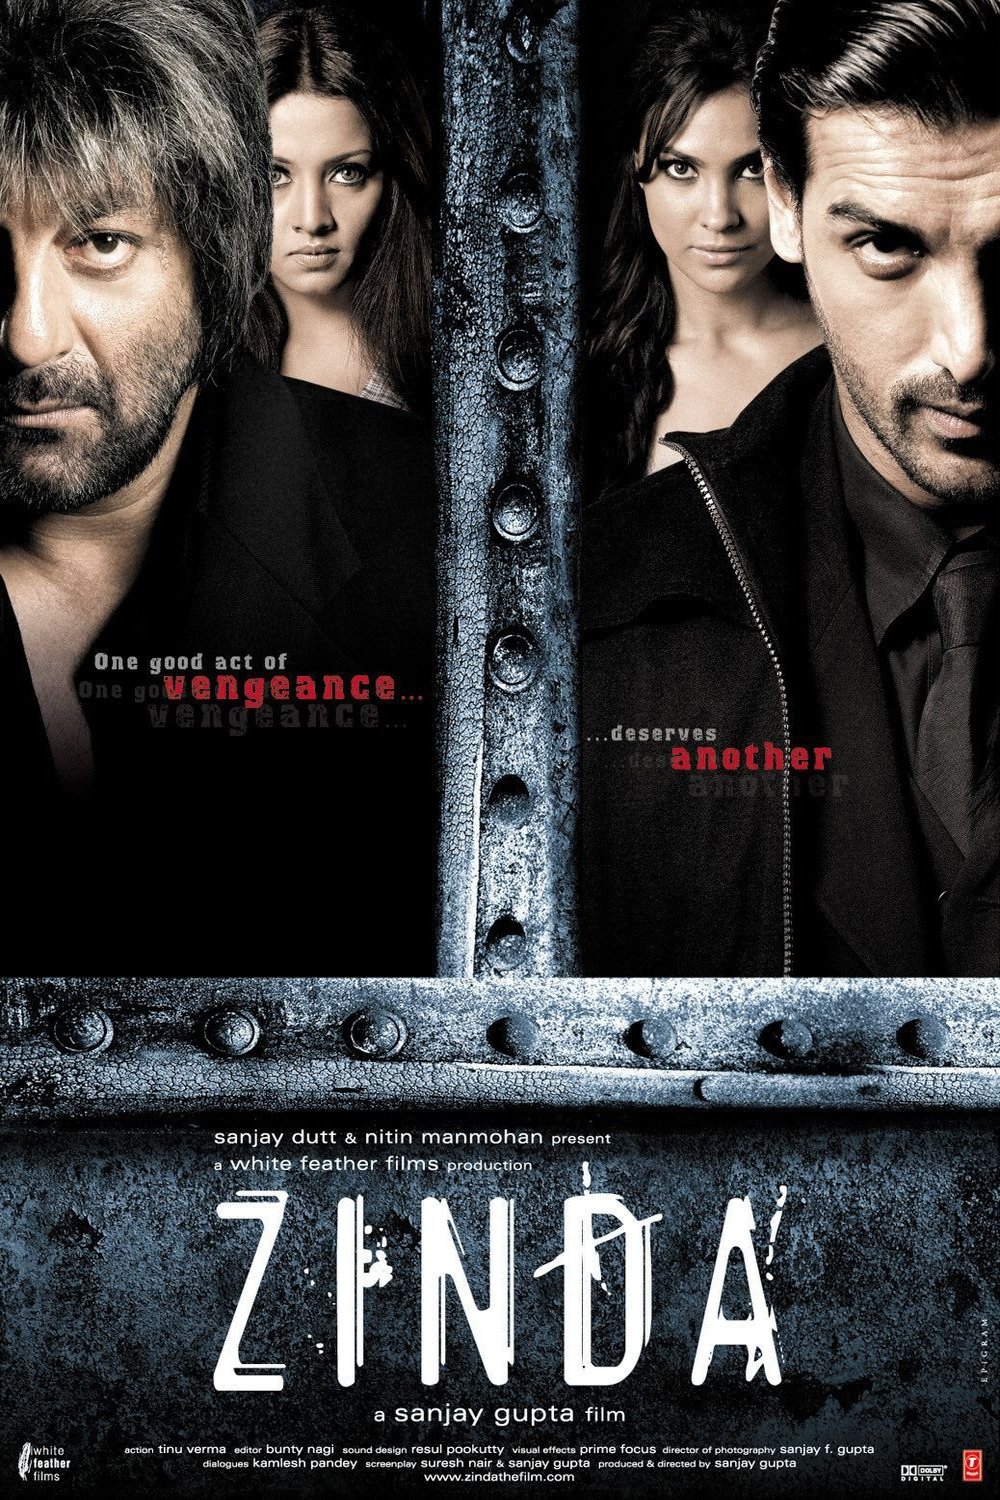 L'affiche du film Zinda